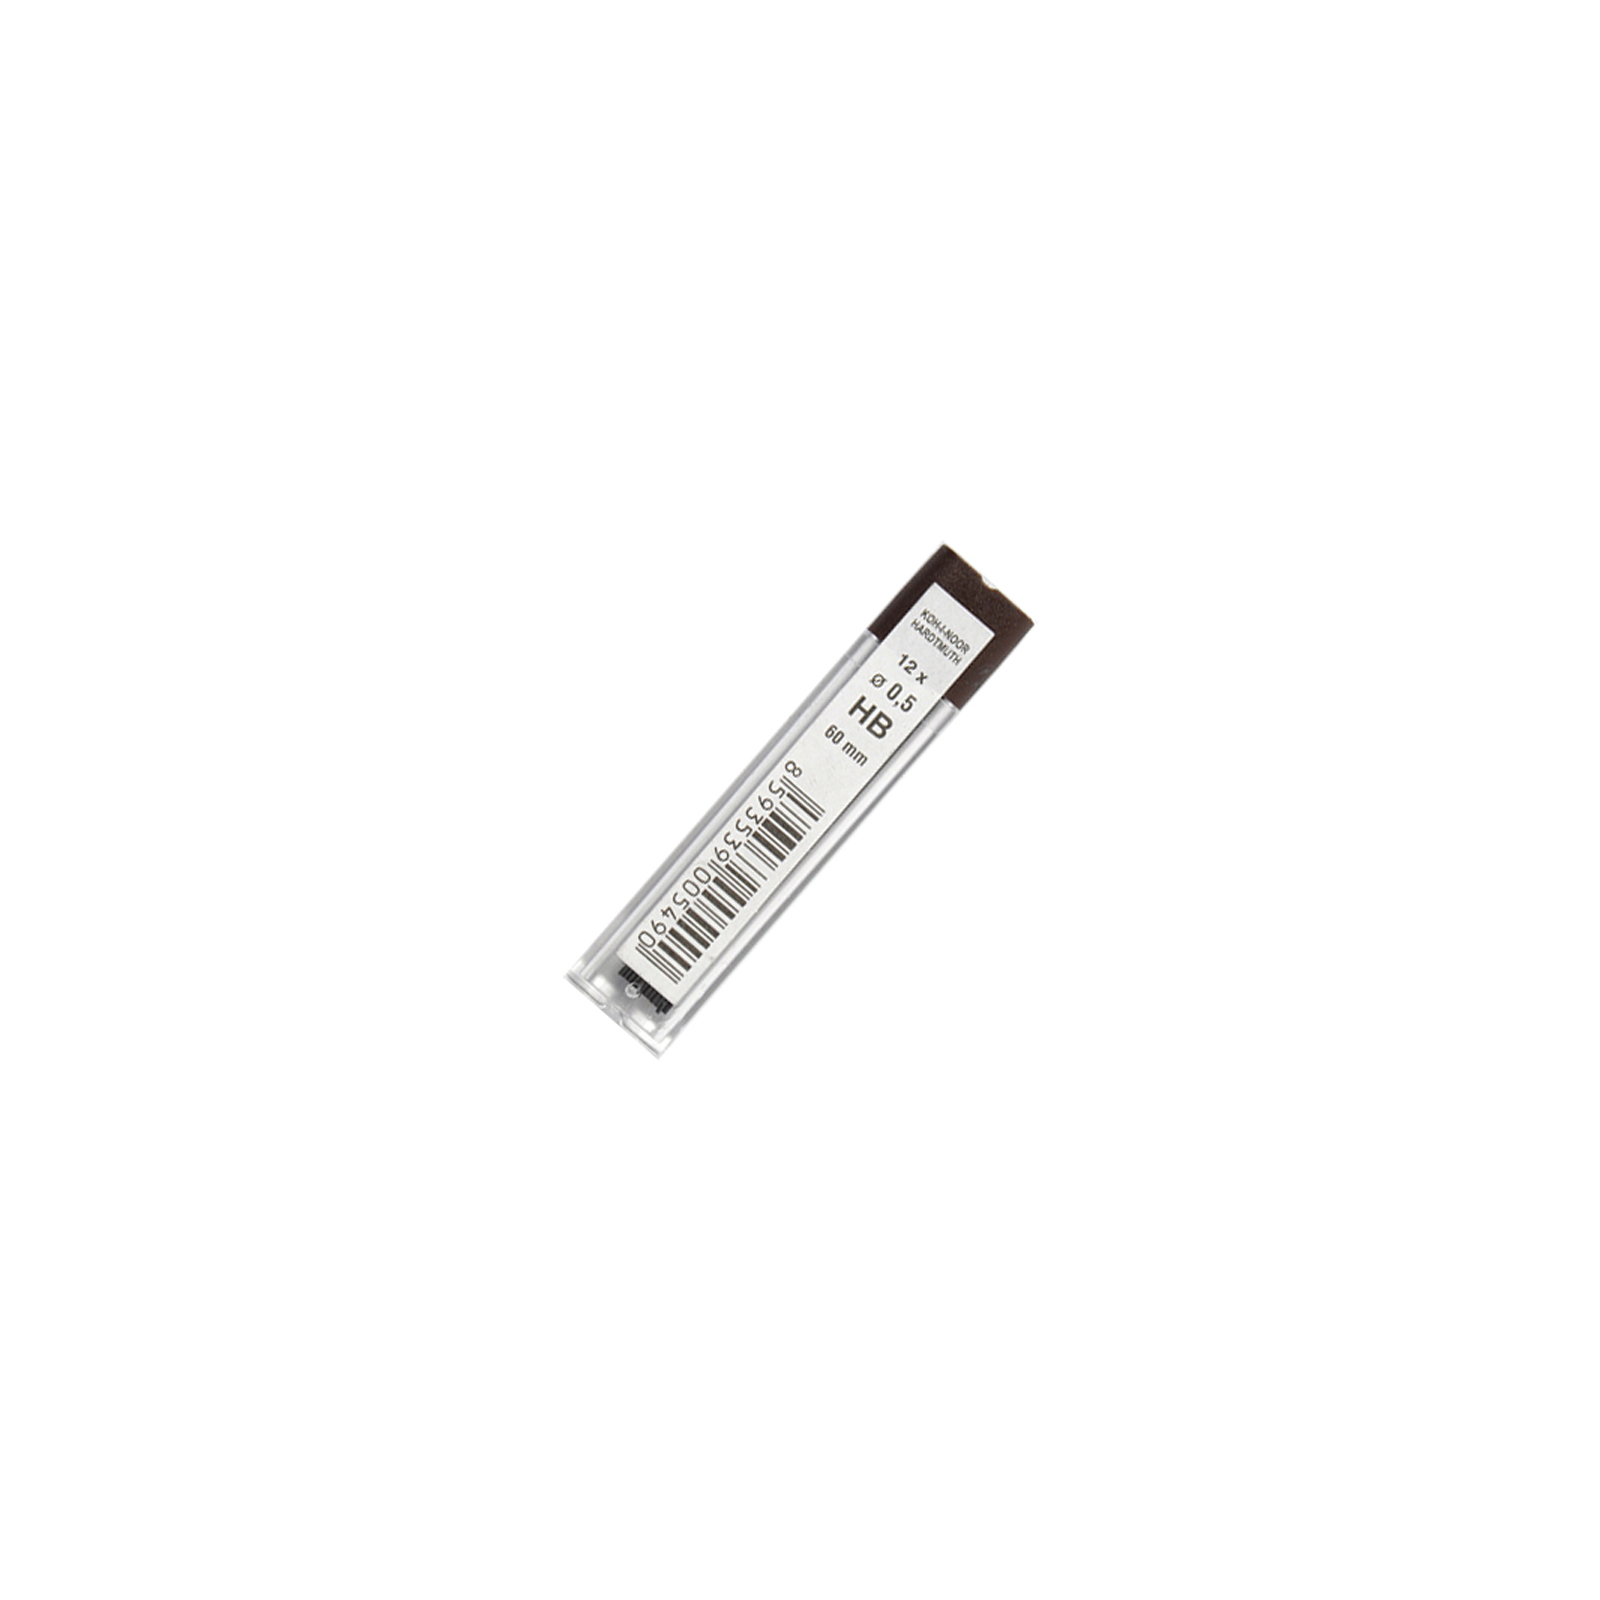 Грифель для механічного олівця Koh-i-Noor 4152.HB, 0.5 мм, 12шт (41520HB005PK)